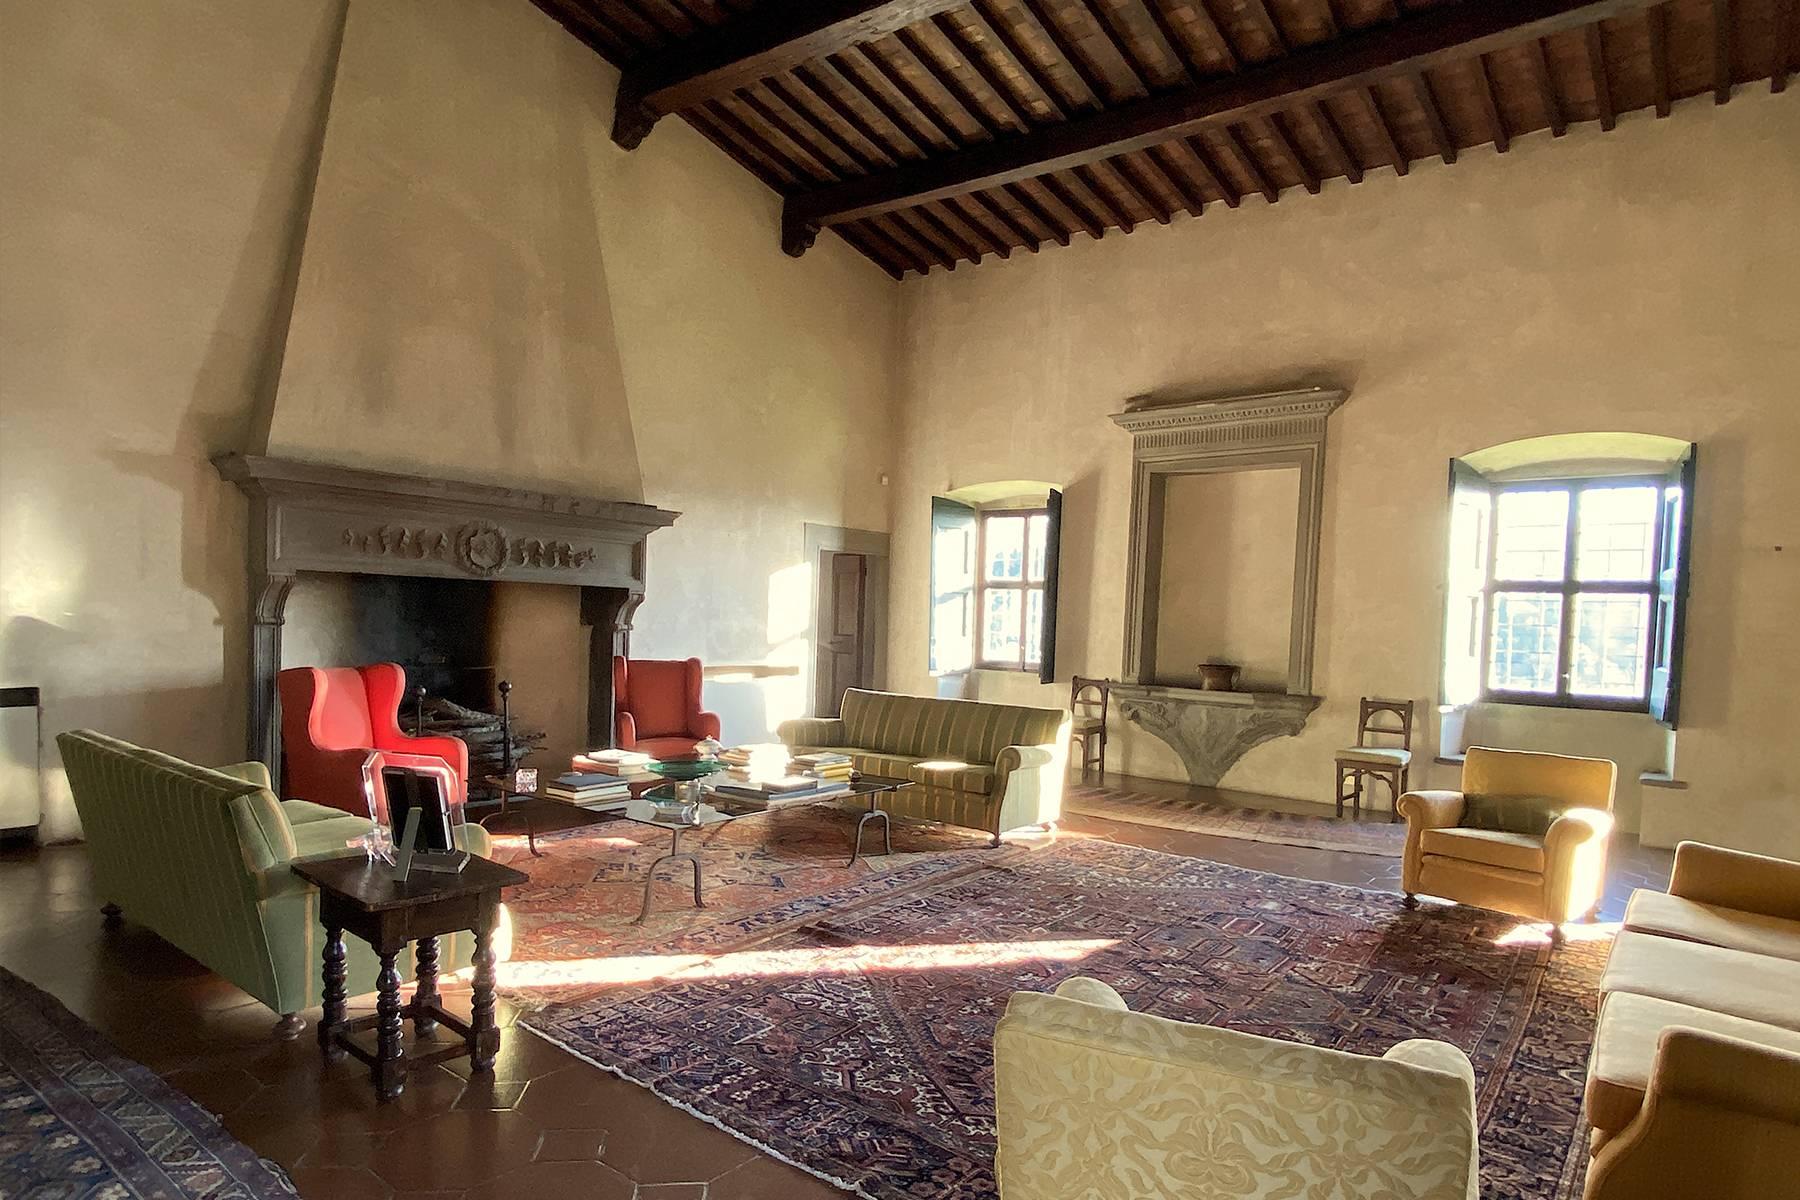 Grande villa padronale d'epoca nella più rinomata zona olearia vicino a Firenze - 8